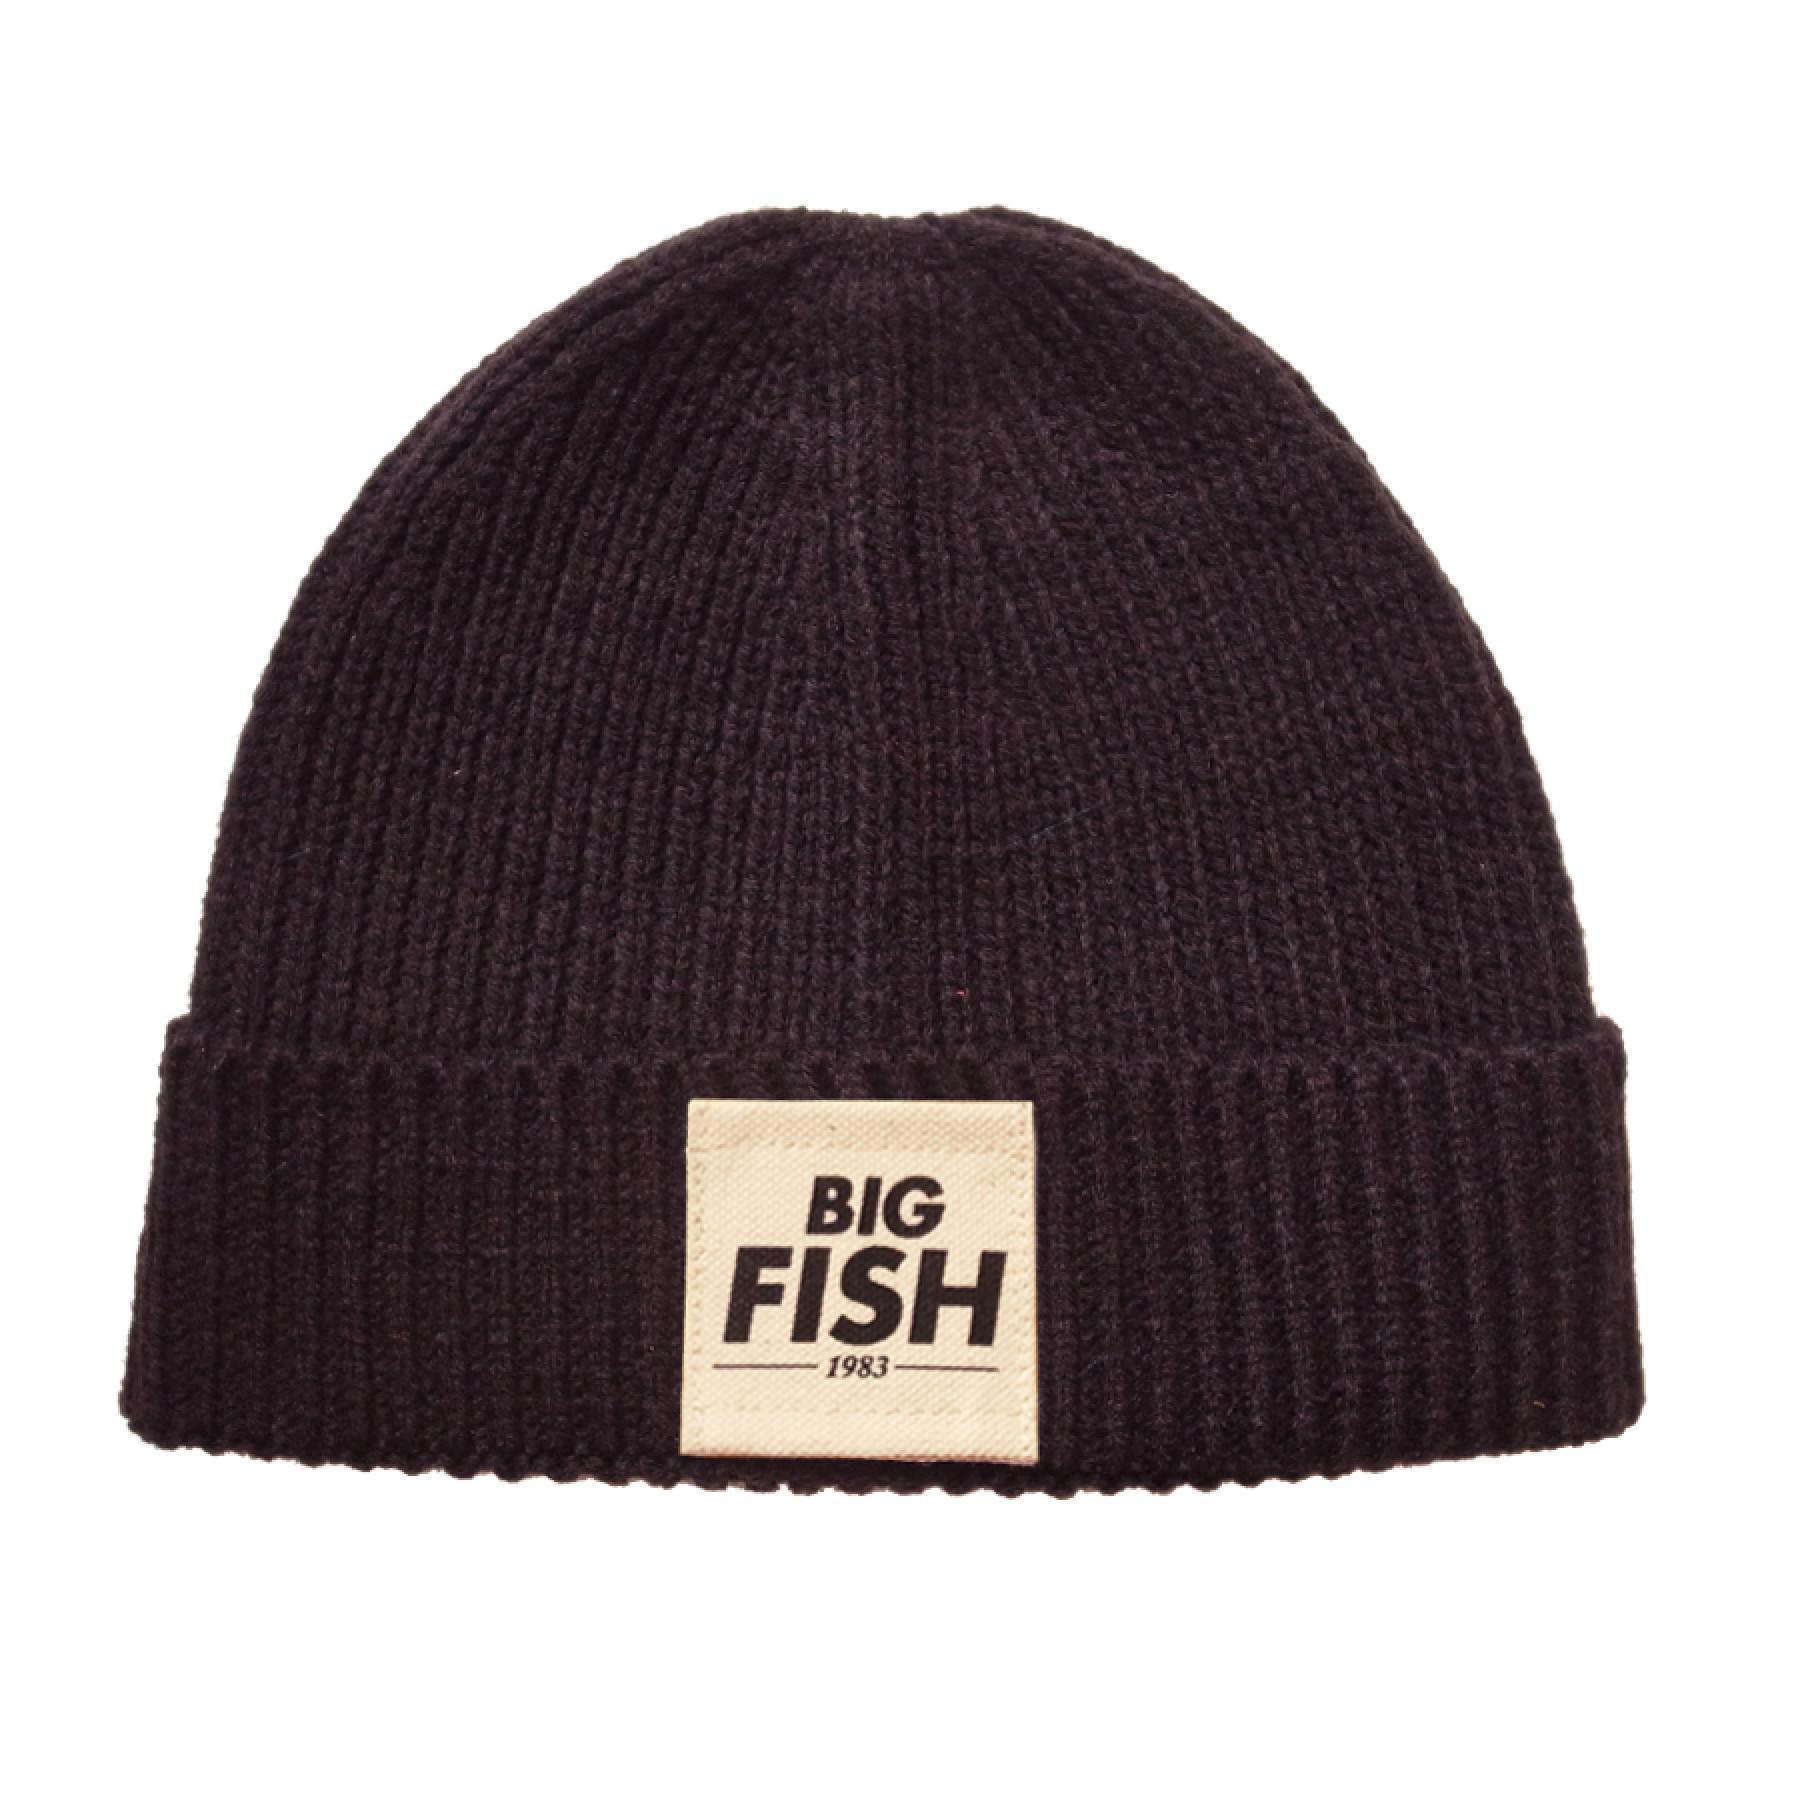 Czapka z logo Big Fish